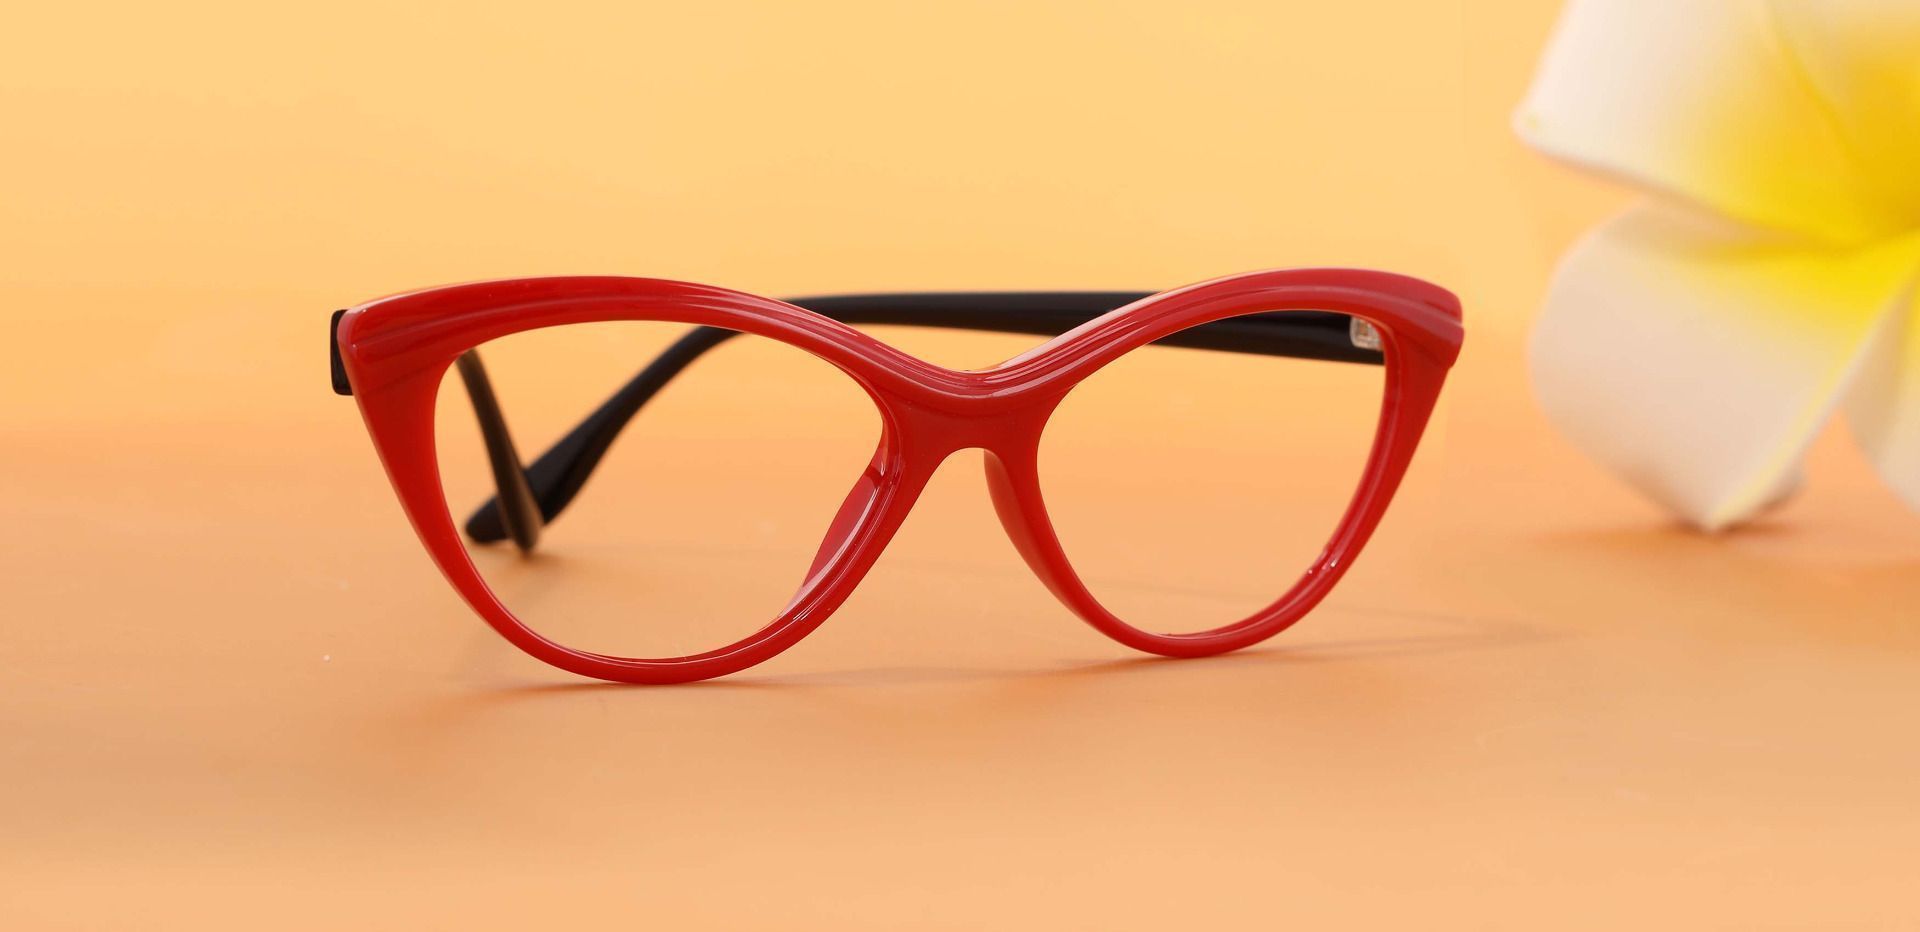 Twilight Cat Eye Prescription Glasses - Red